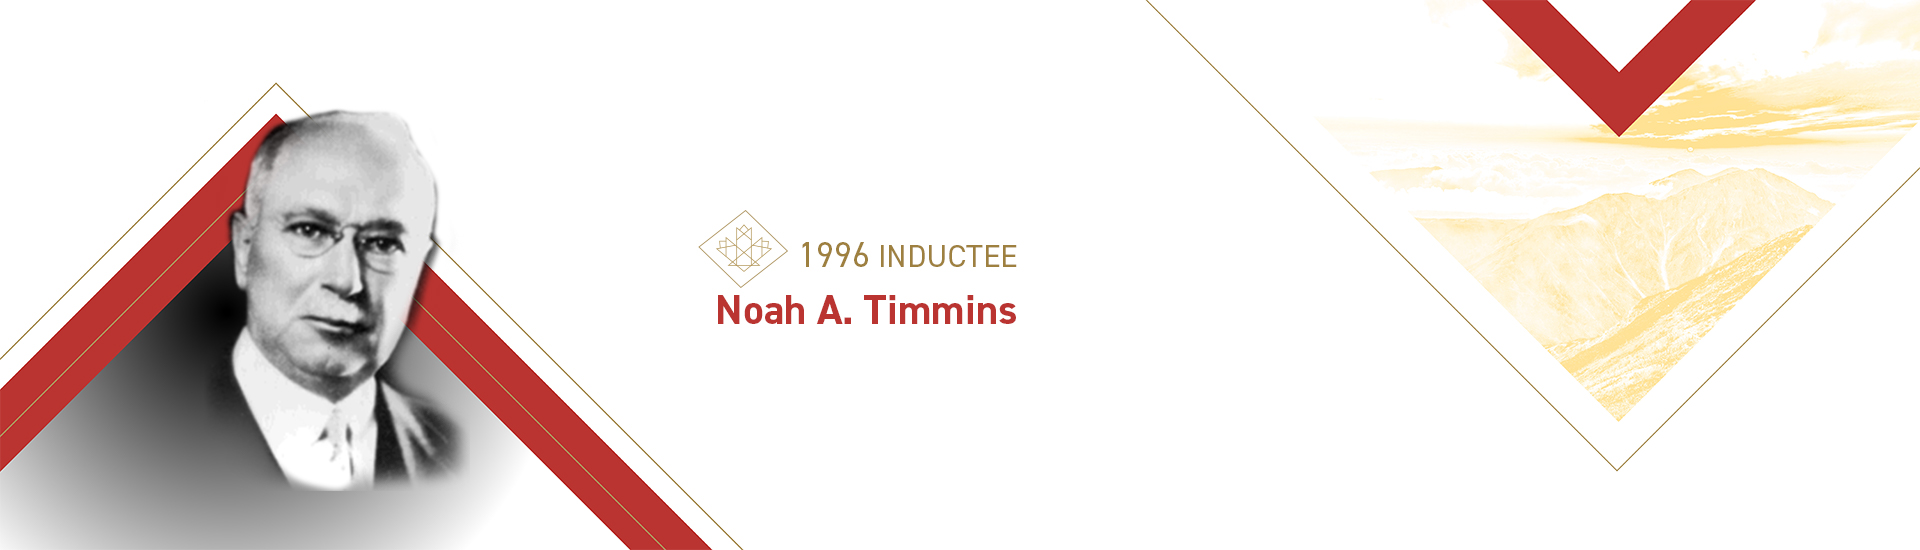 Noah A. Timmins (1867 – 1936)